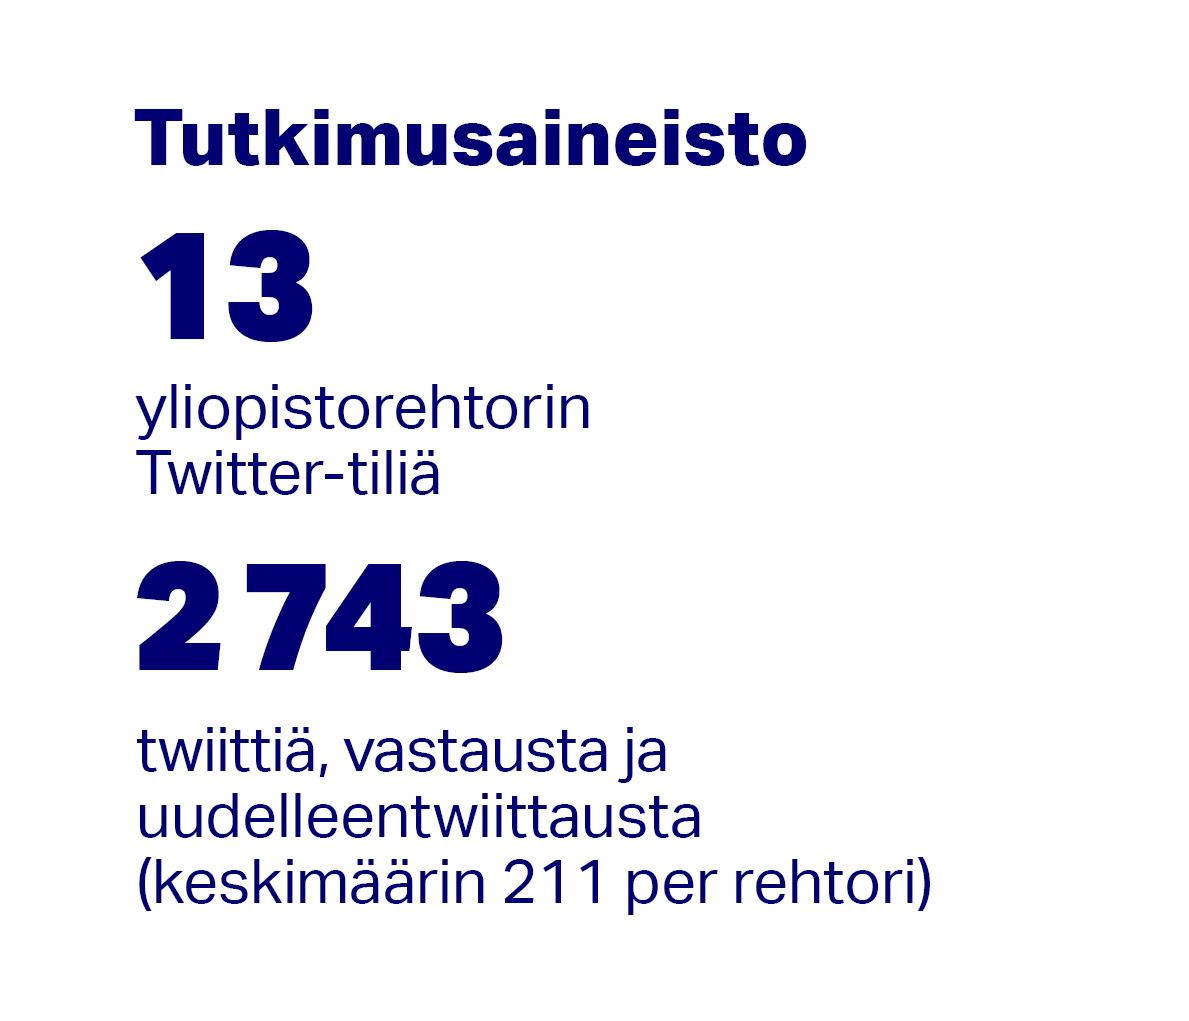 Tutkimusaineisto koostui kolmestatoista yliopistorehtorin Twitter-tilistä ja 2743 twiitistä, vastauksesta ja uudelleentwiittauksesta (keskimäärin 211 per rehtori). 